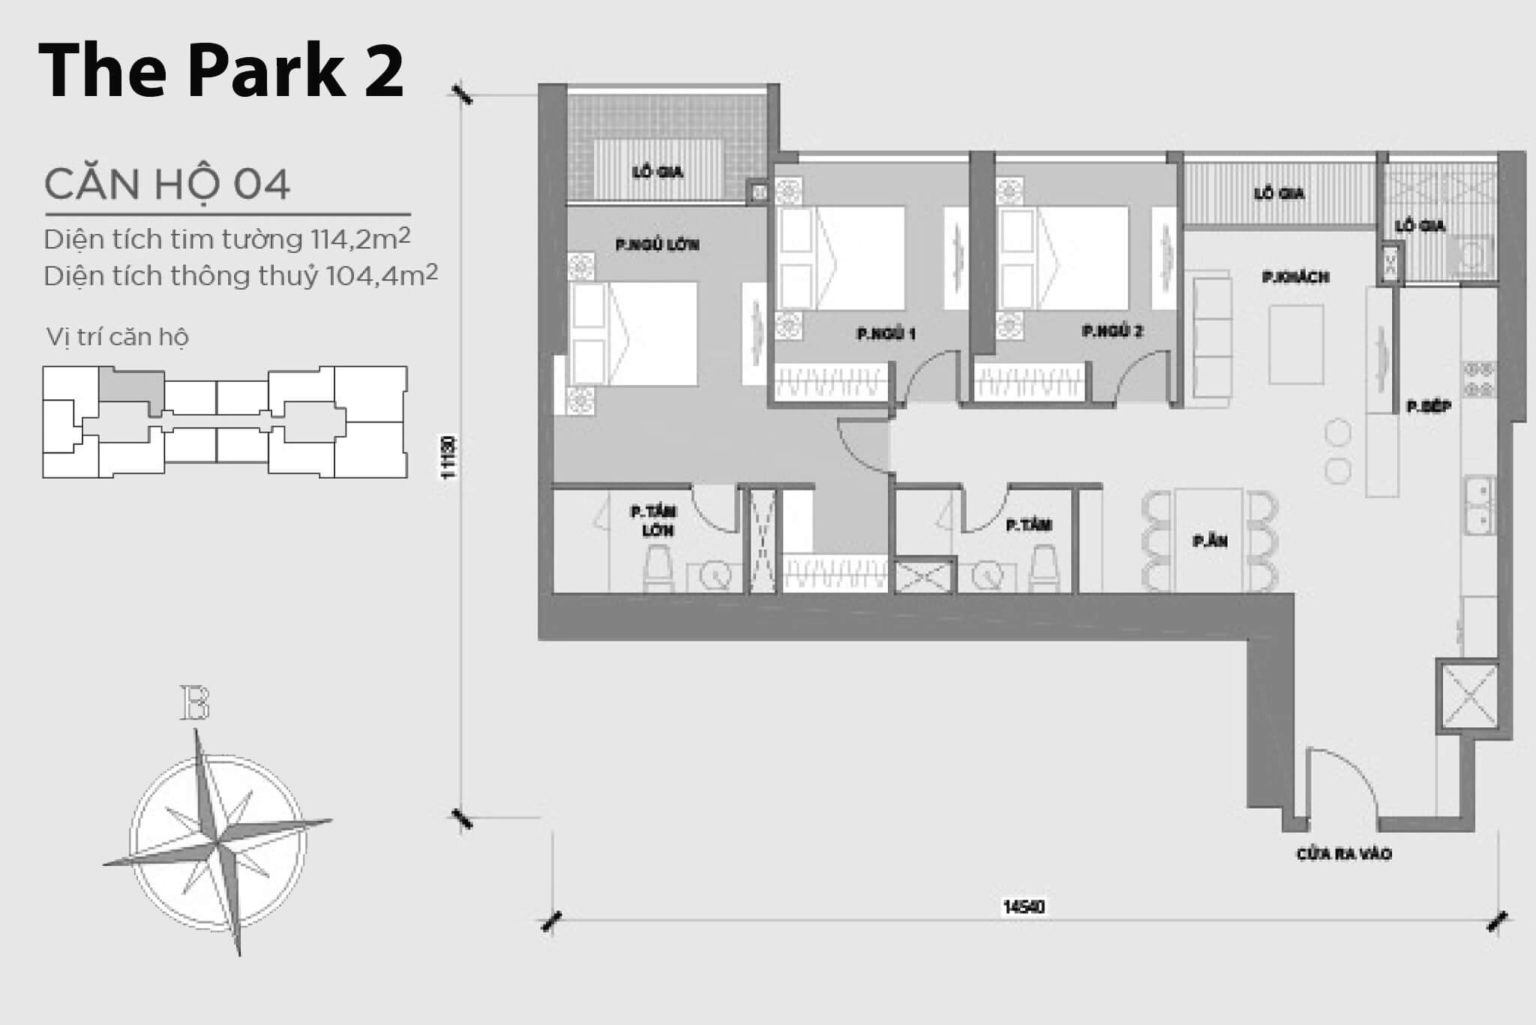 202301/02/09/171813-mat-bang-layout-park-2-can-ho-04-1536x1025.jpg